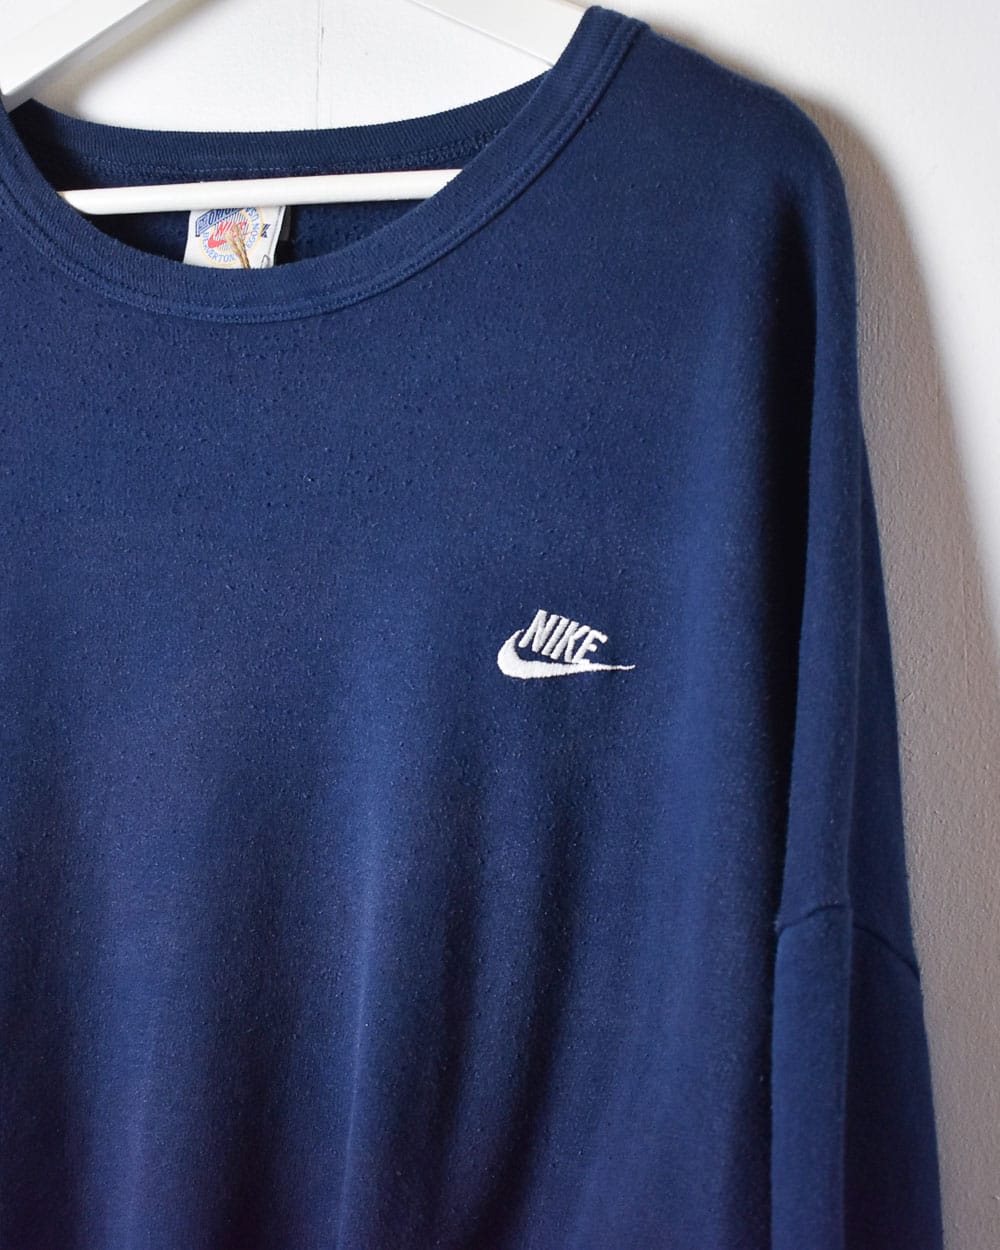 Navy Nike 80s Sweatshirt - XX-Large